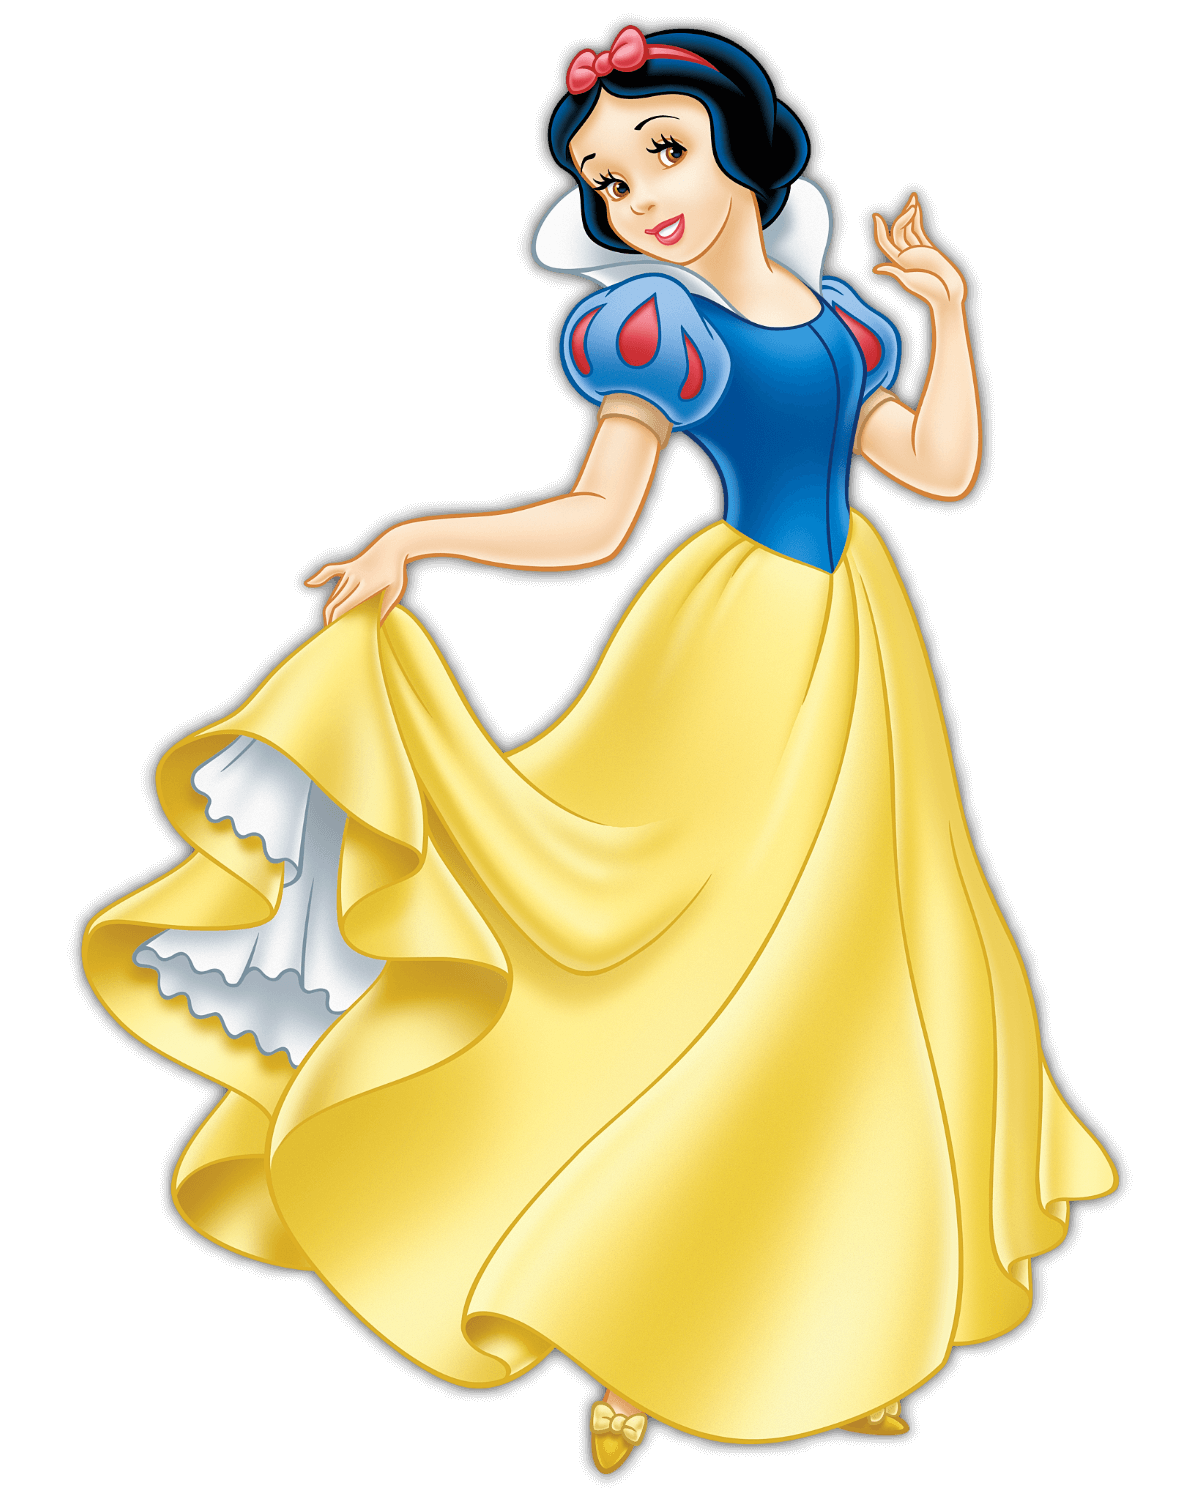 Disney Prinzessin Schneewittchen mit schwarzen Haaren und roter Schleife. Sie trägt ein Kleid mit gelbem Rock und blauer Bluse mit Puffärmeln